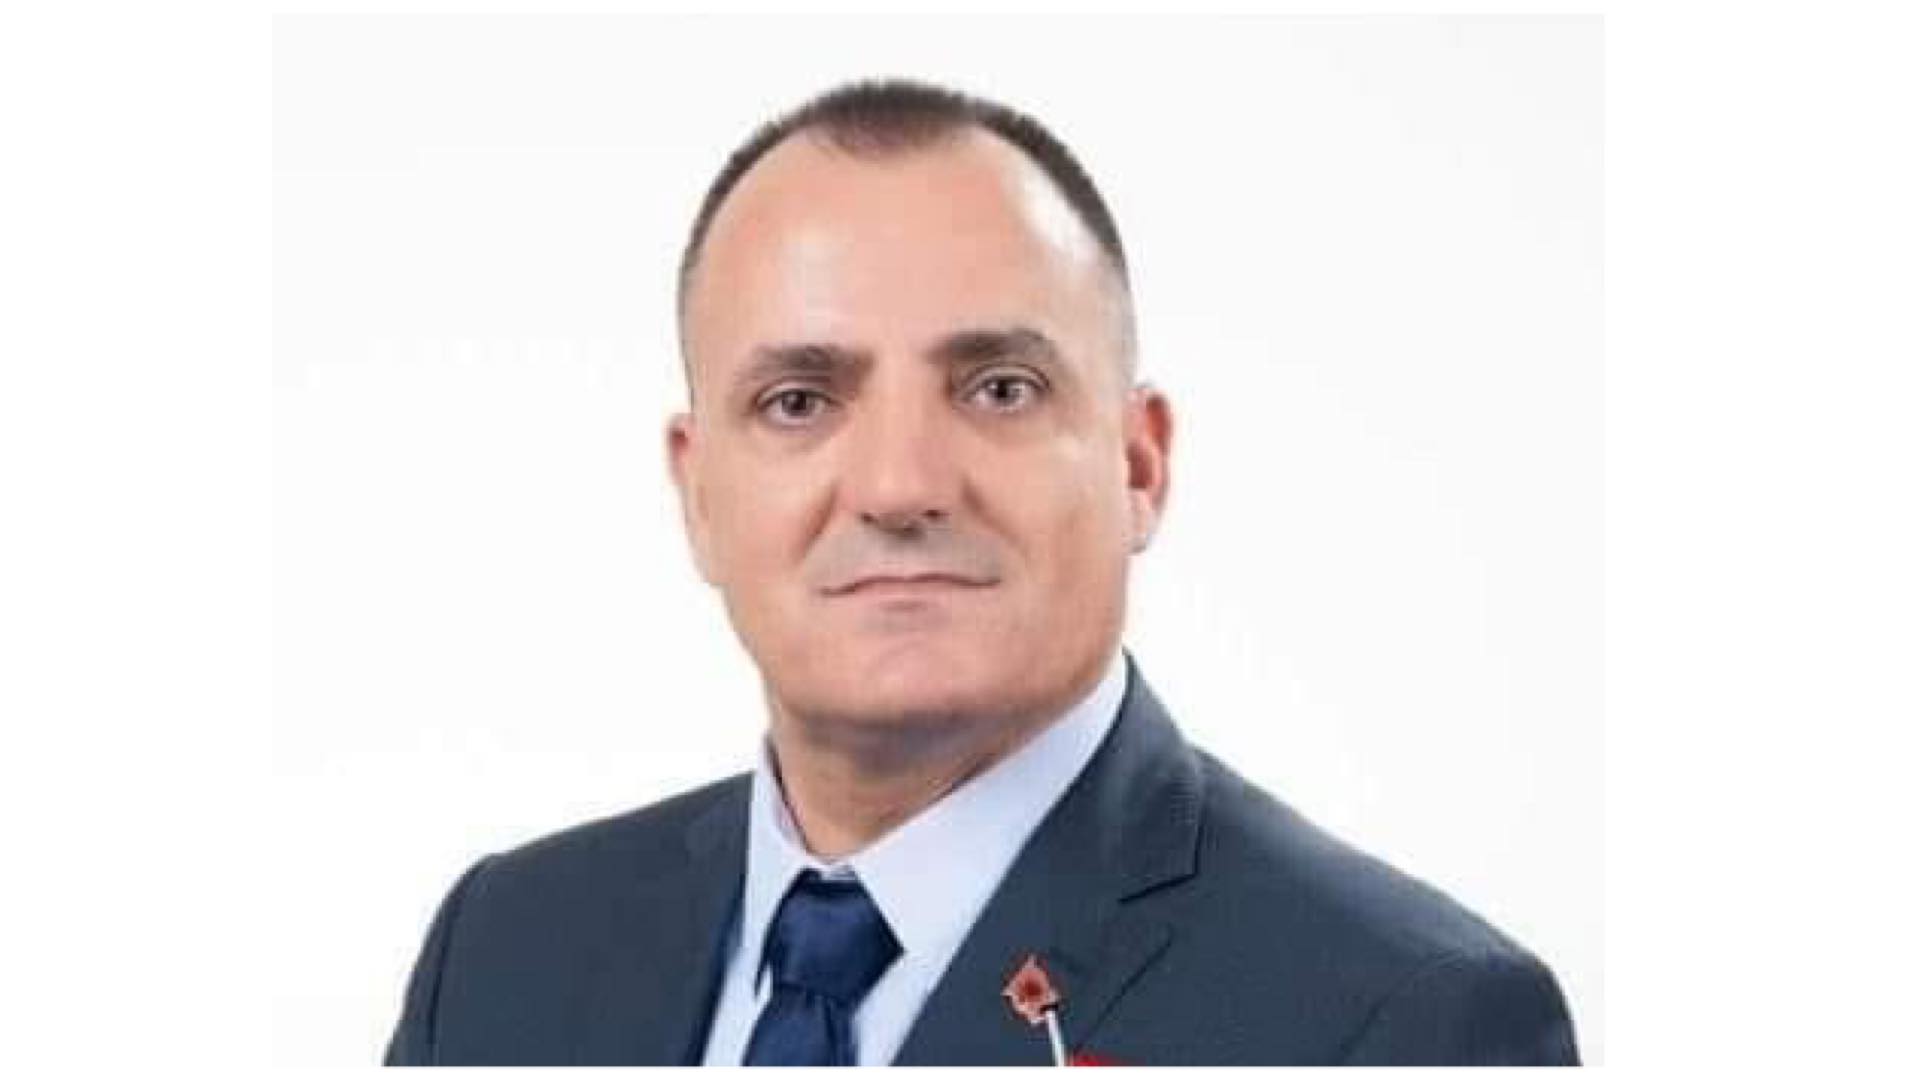  Drejtori i Inspekcionit në Podujevë falenderon mediet për raportime, arsyetohet se punët “llugë” u’a la pushteti i kaluar